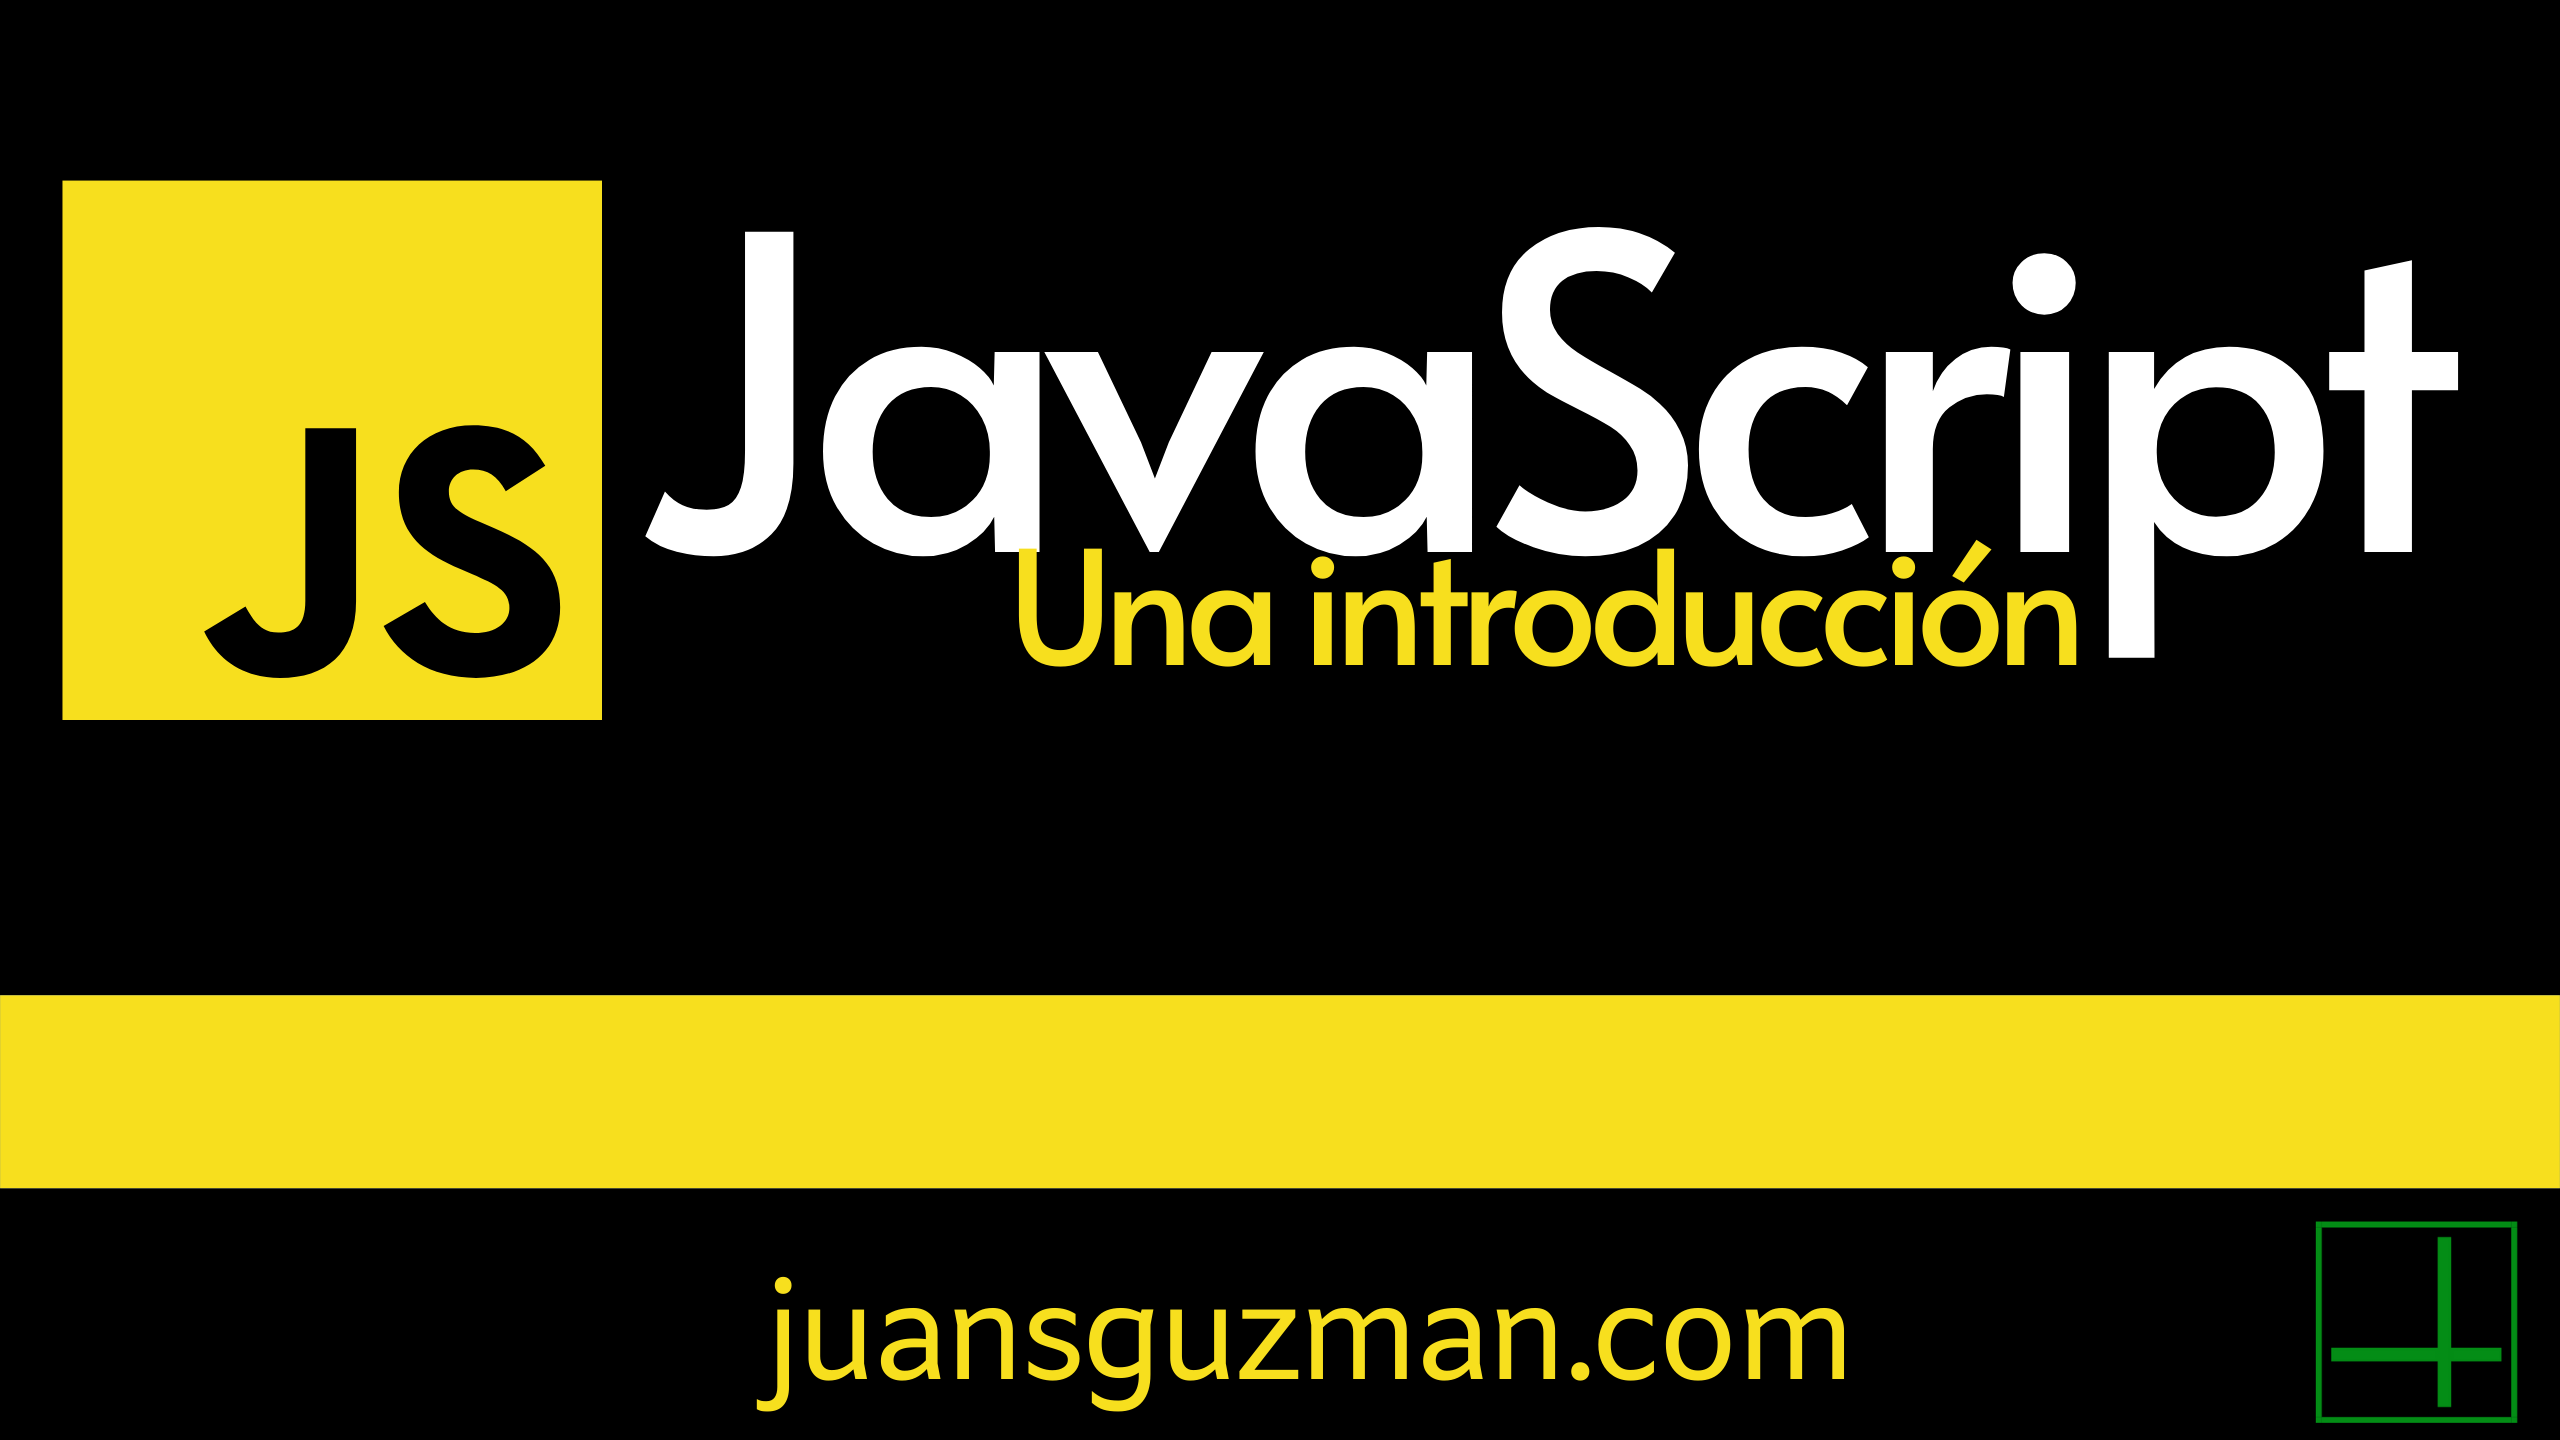 Introducción a Javascript